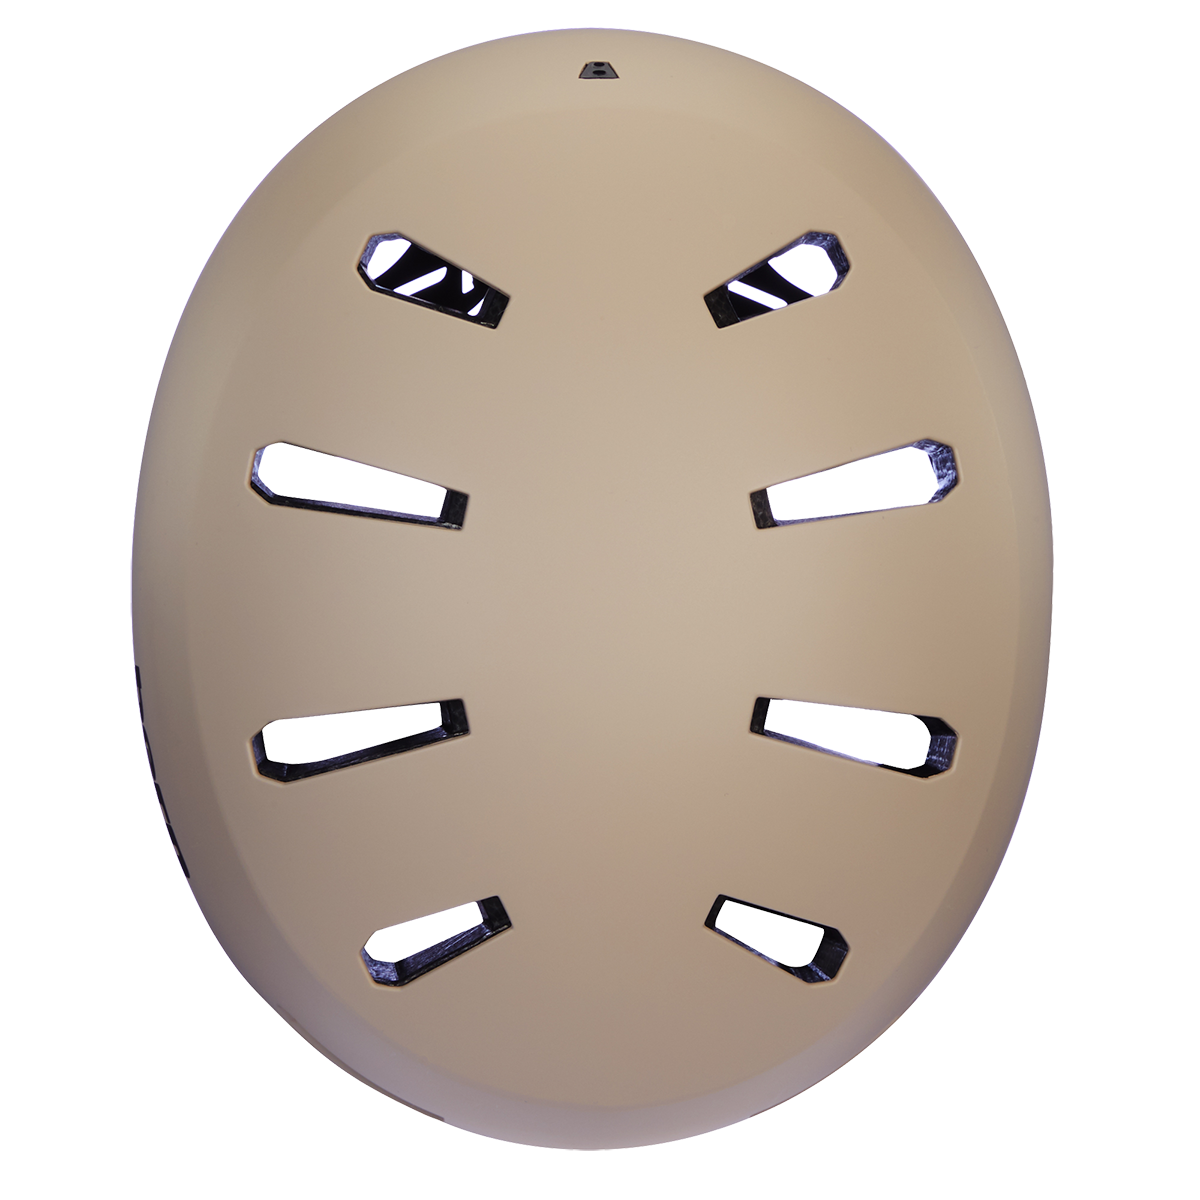 BERN - Macon 2.0 EPS (Matte Sand) Helmet